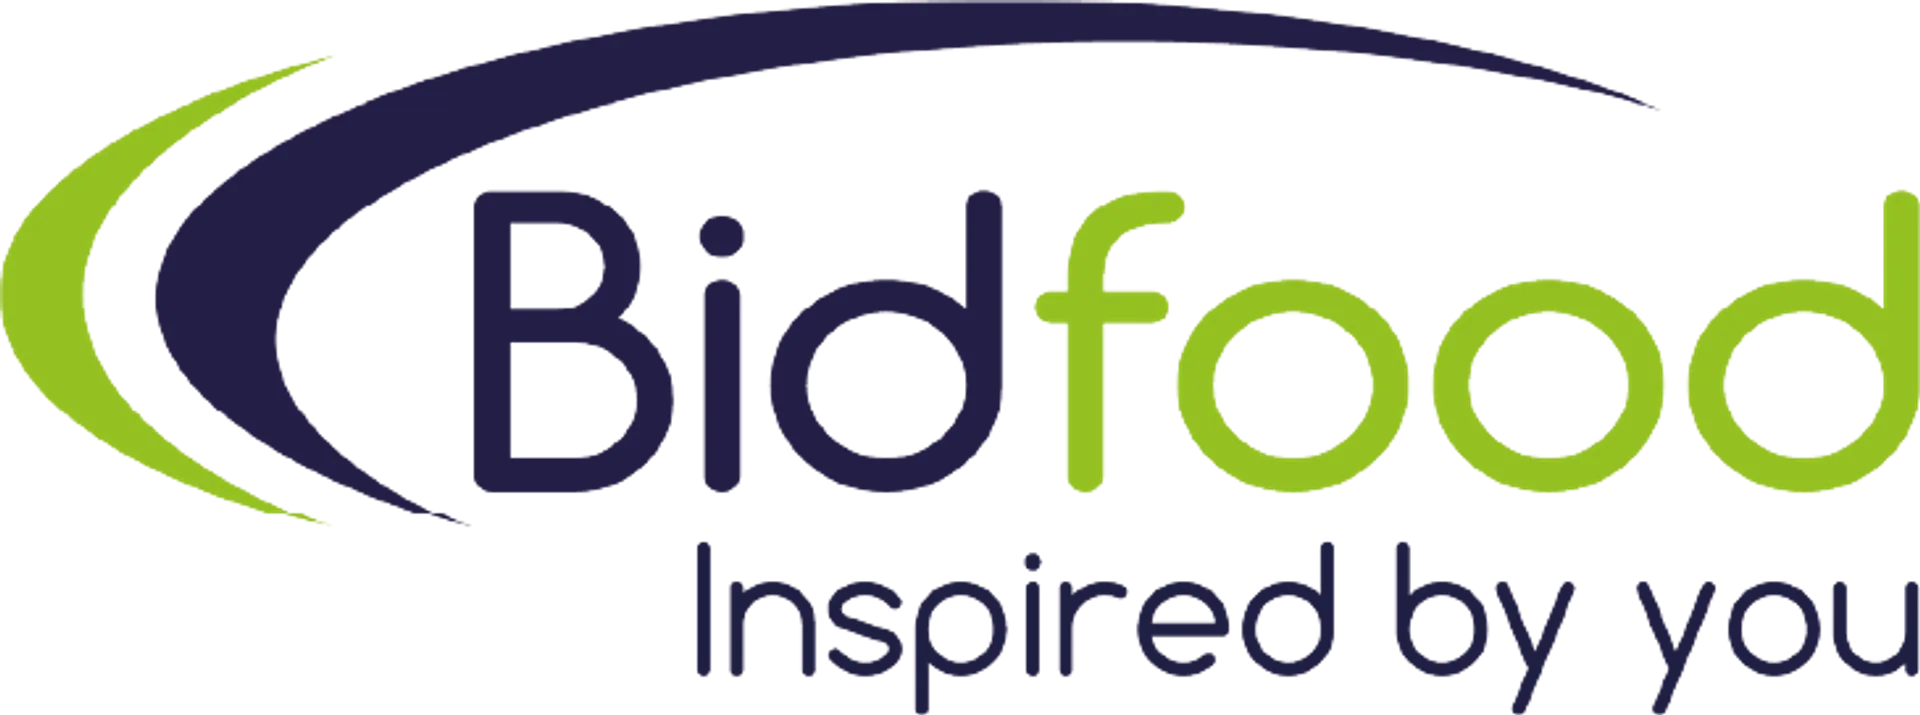 BIDFOOD logo current weekly ad